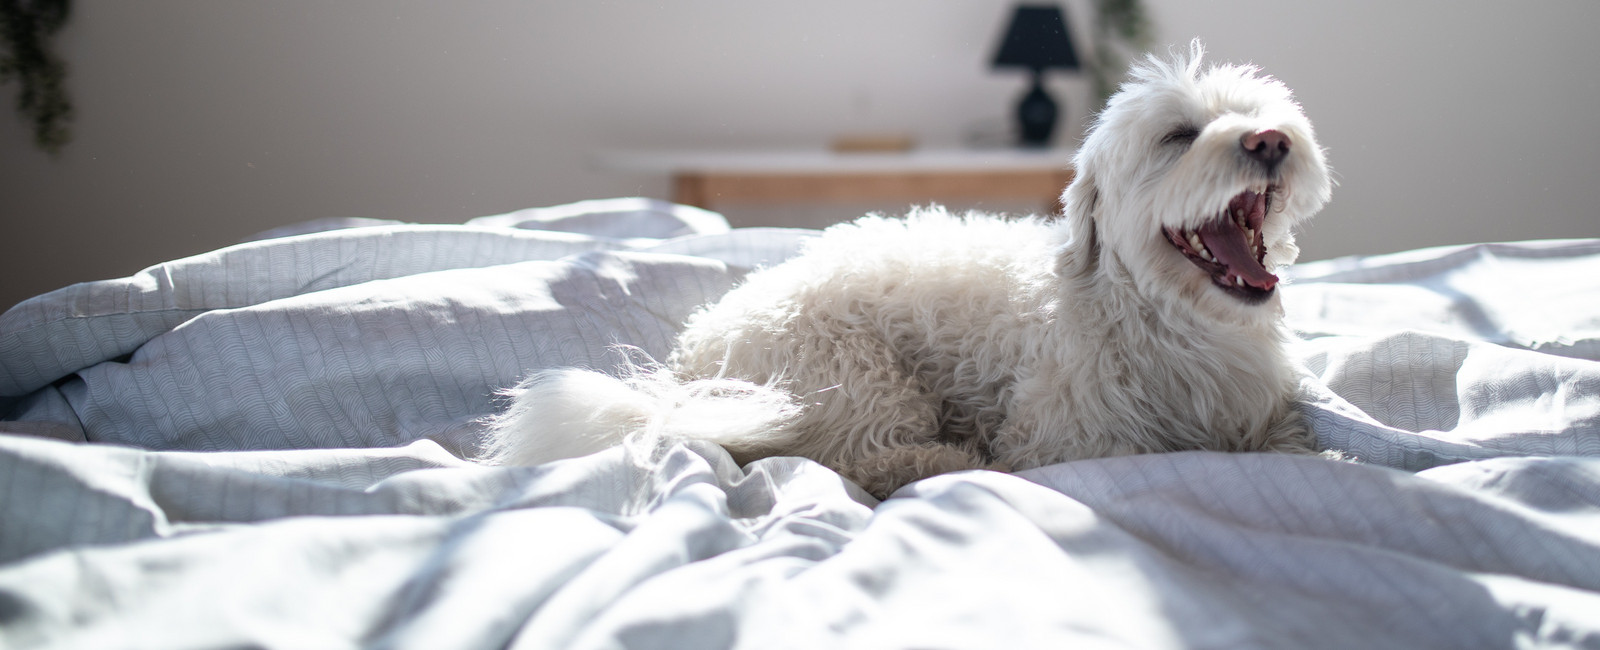 Hunderassen, die nicht Haaren: Hund gähnt auf Bett